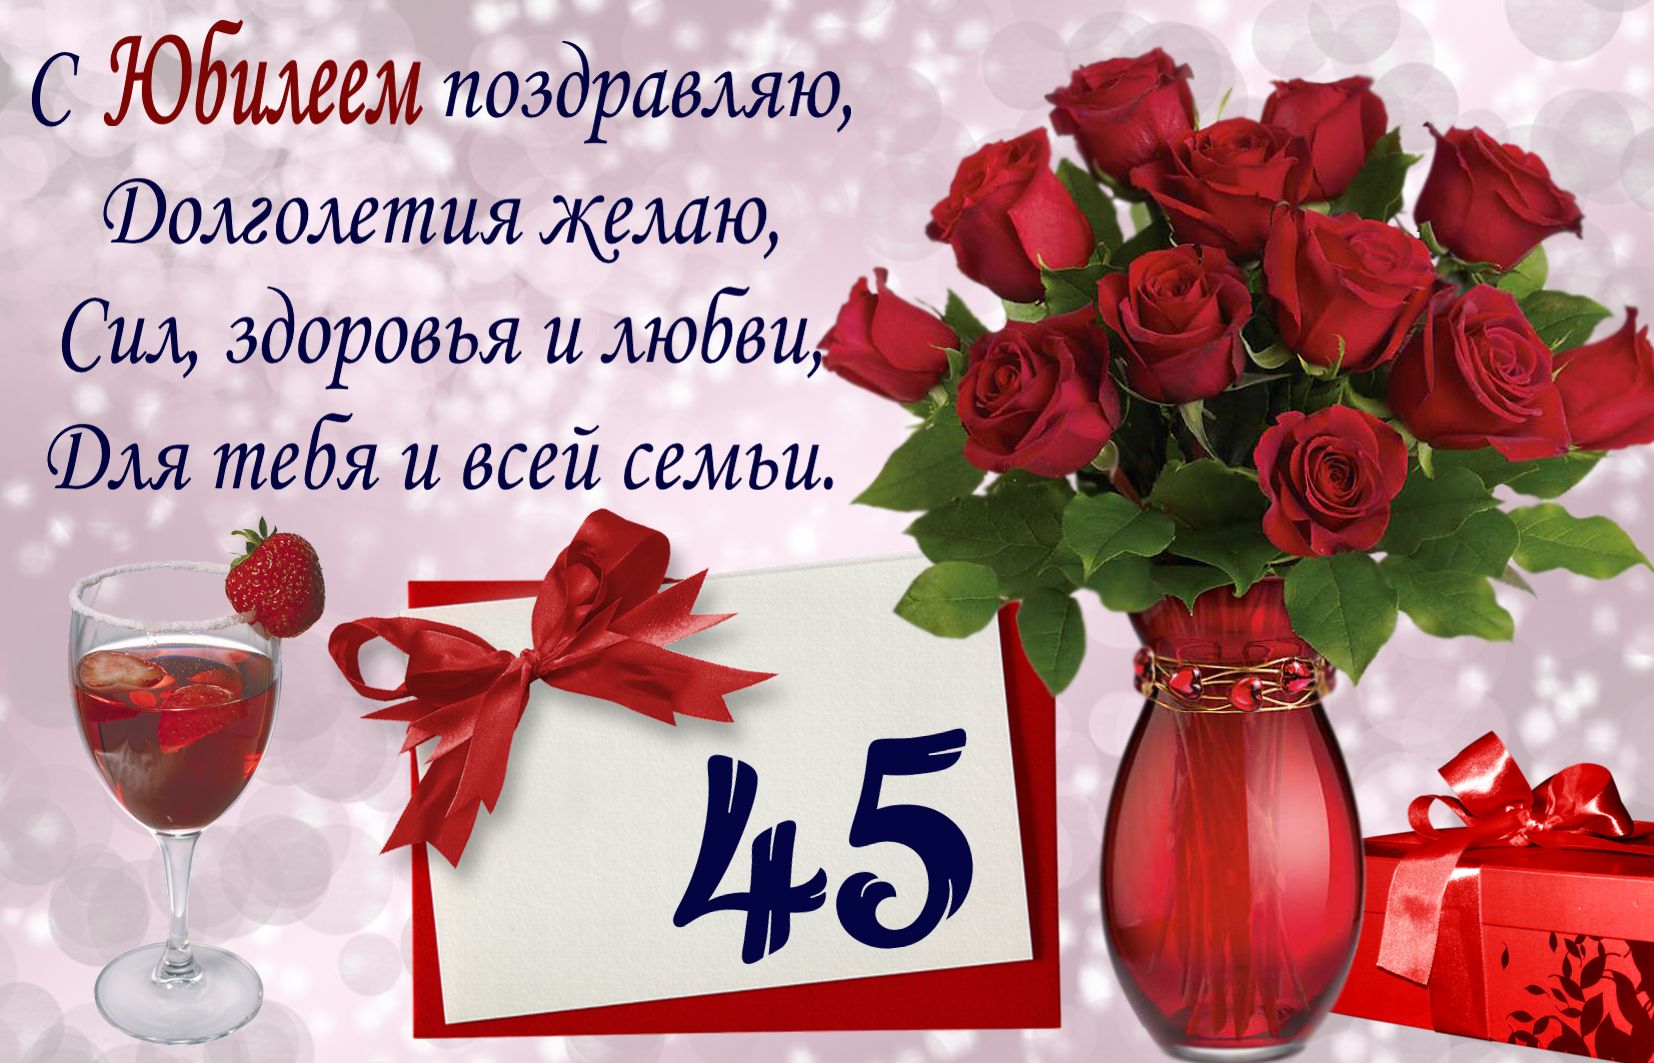 Открытка на юбилей 45 лет - пожелание и красивый букет роз в вазе